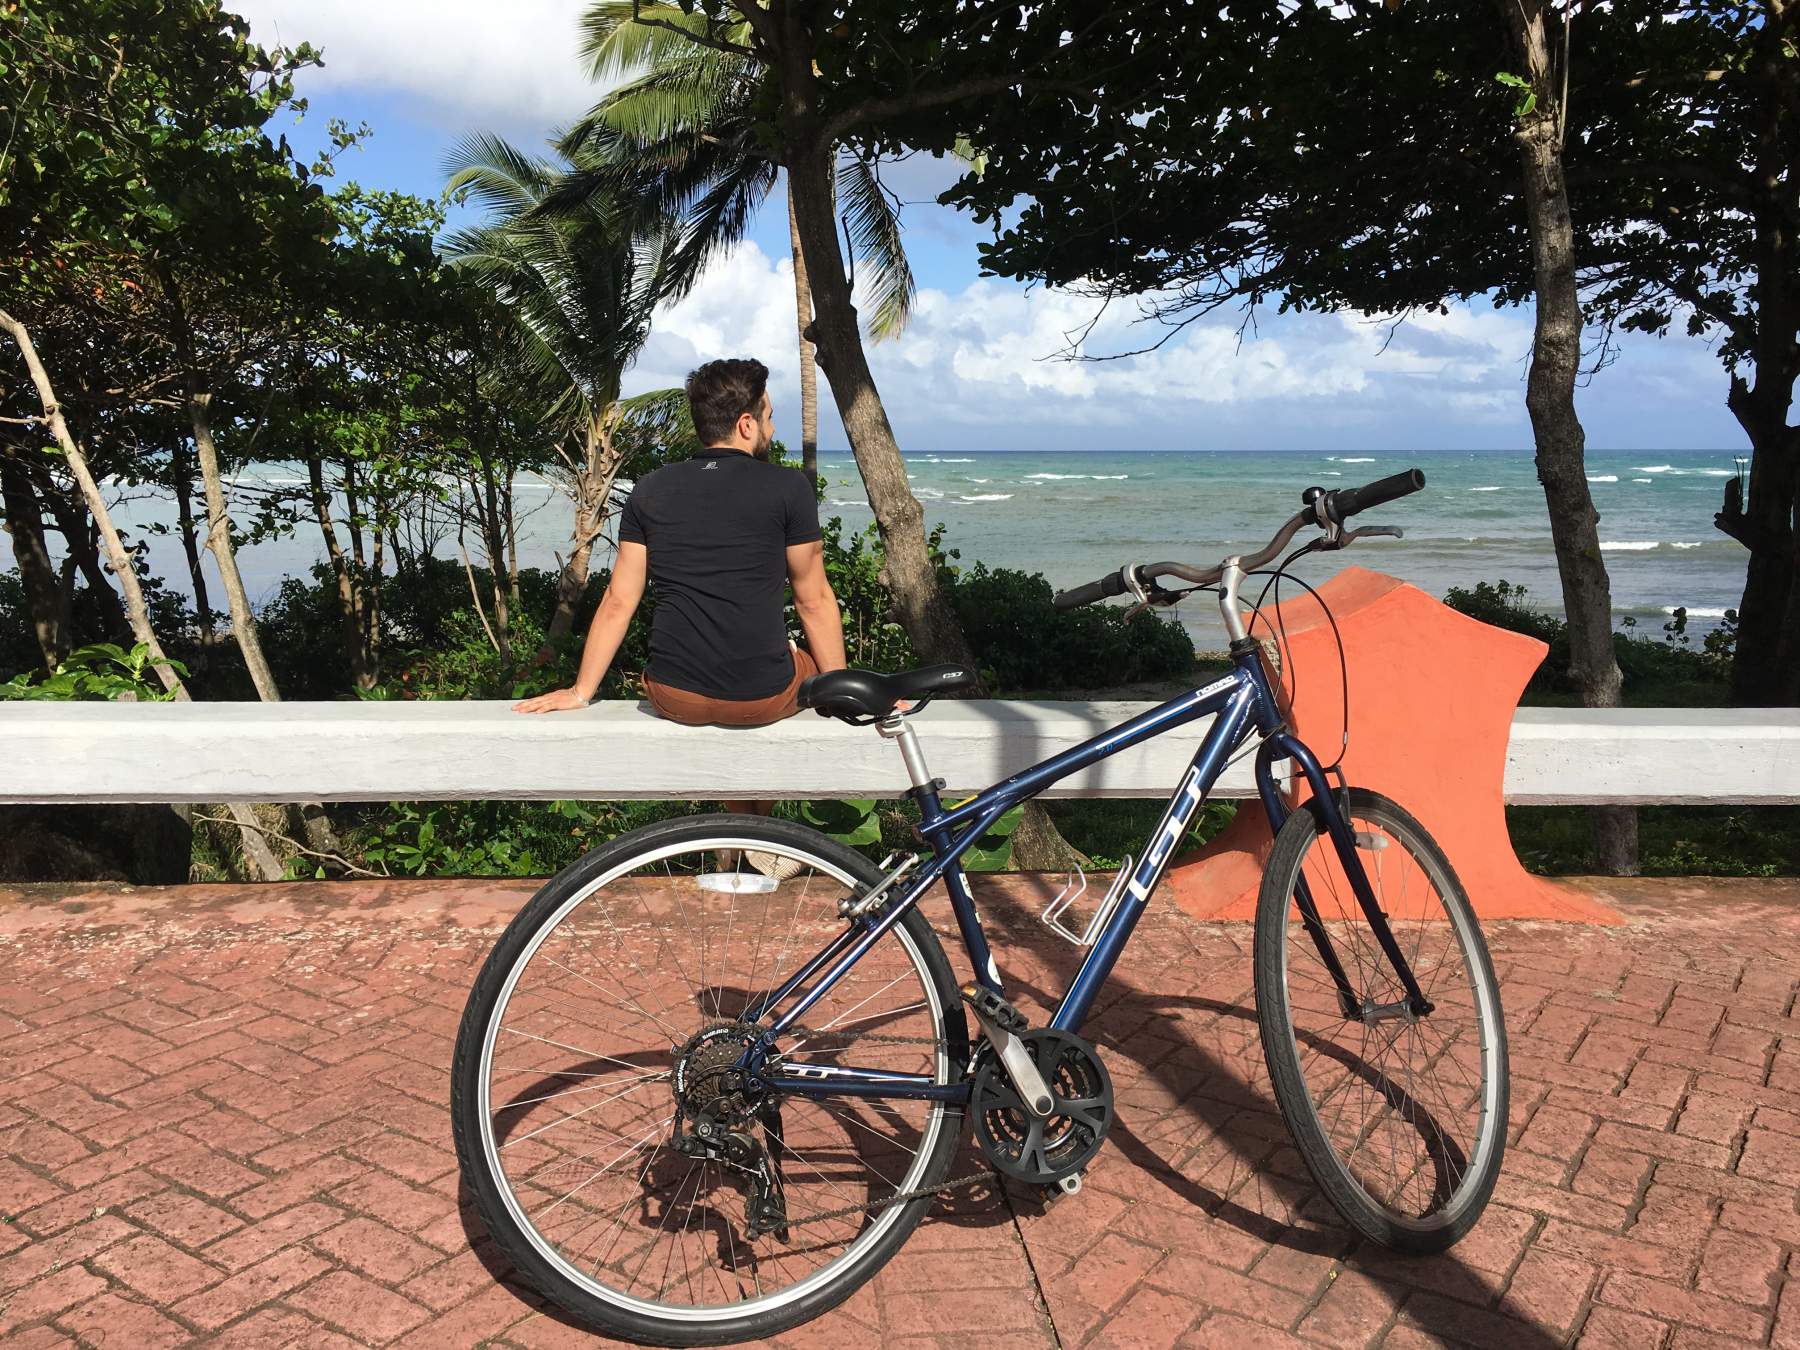 Bike ride in Malecon, Puerto Plata, Dominican Republic